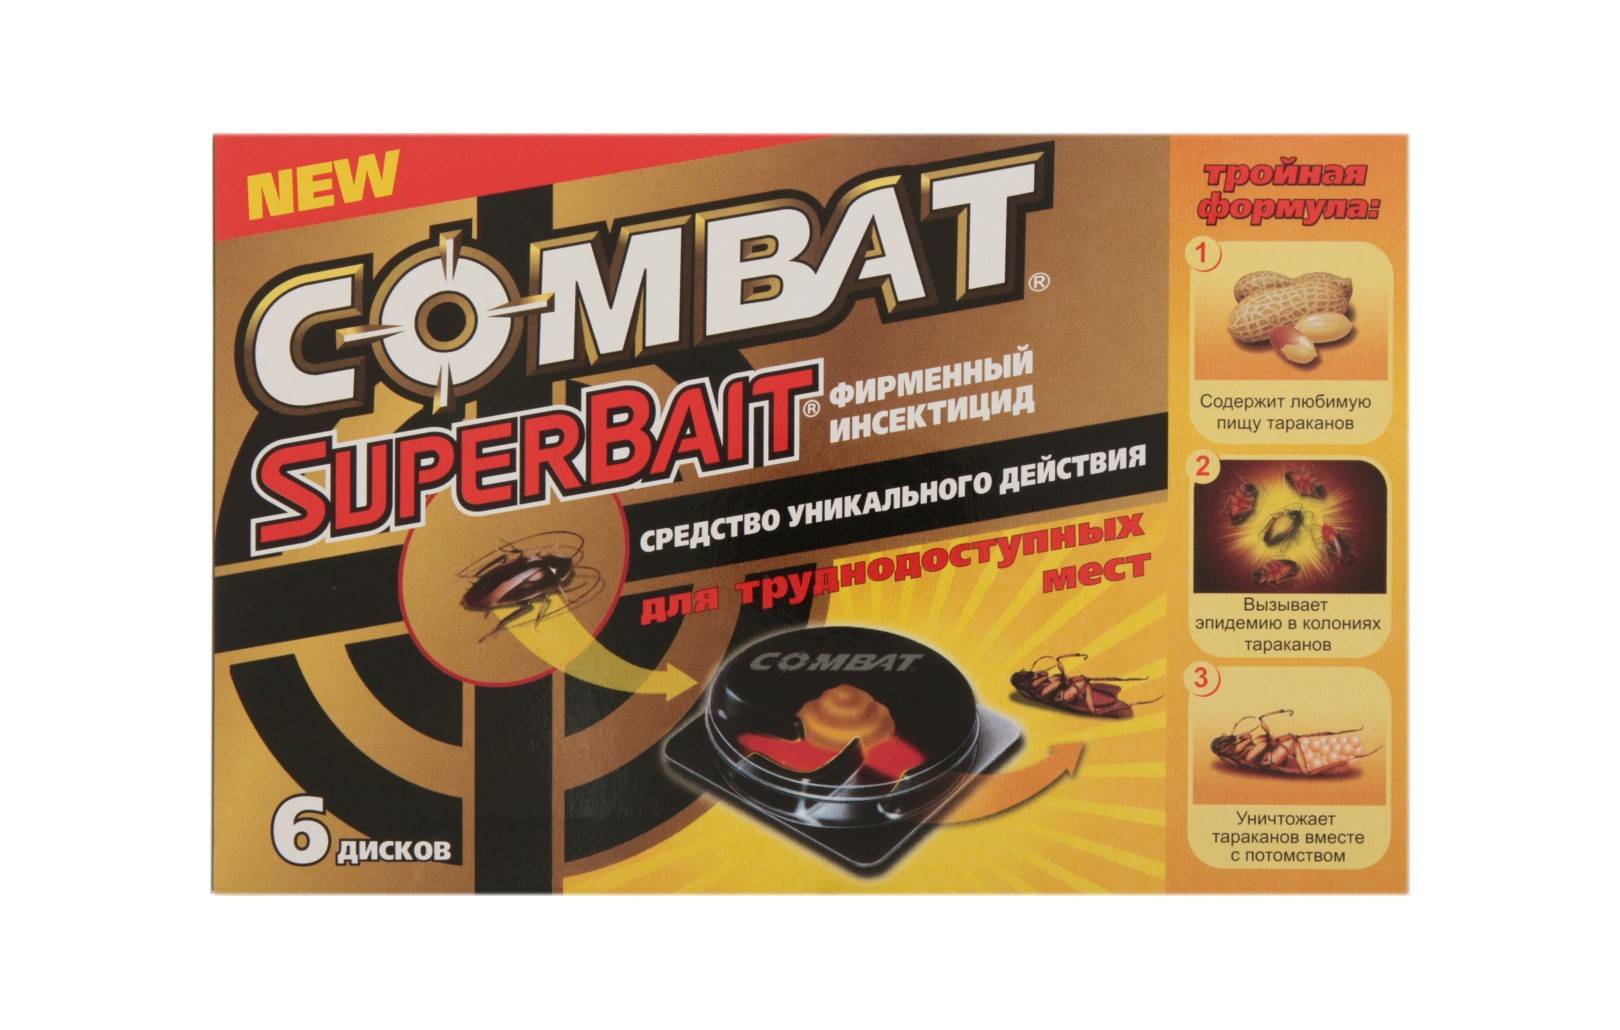 Комбат от тараканов: combat super bait, ловушка и гель супербайт, отзывы